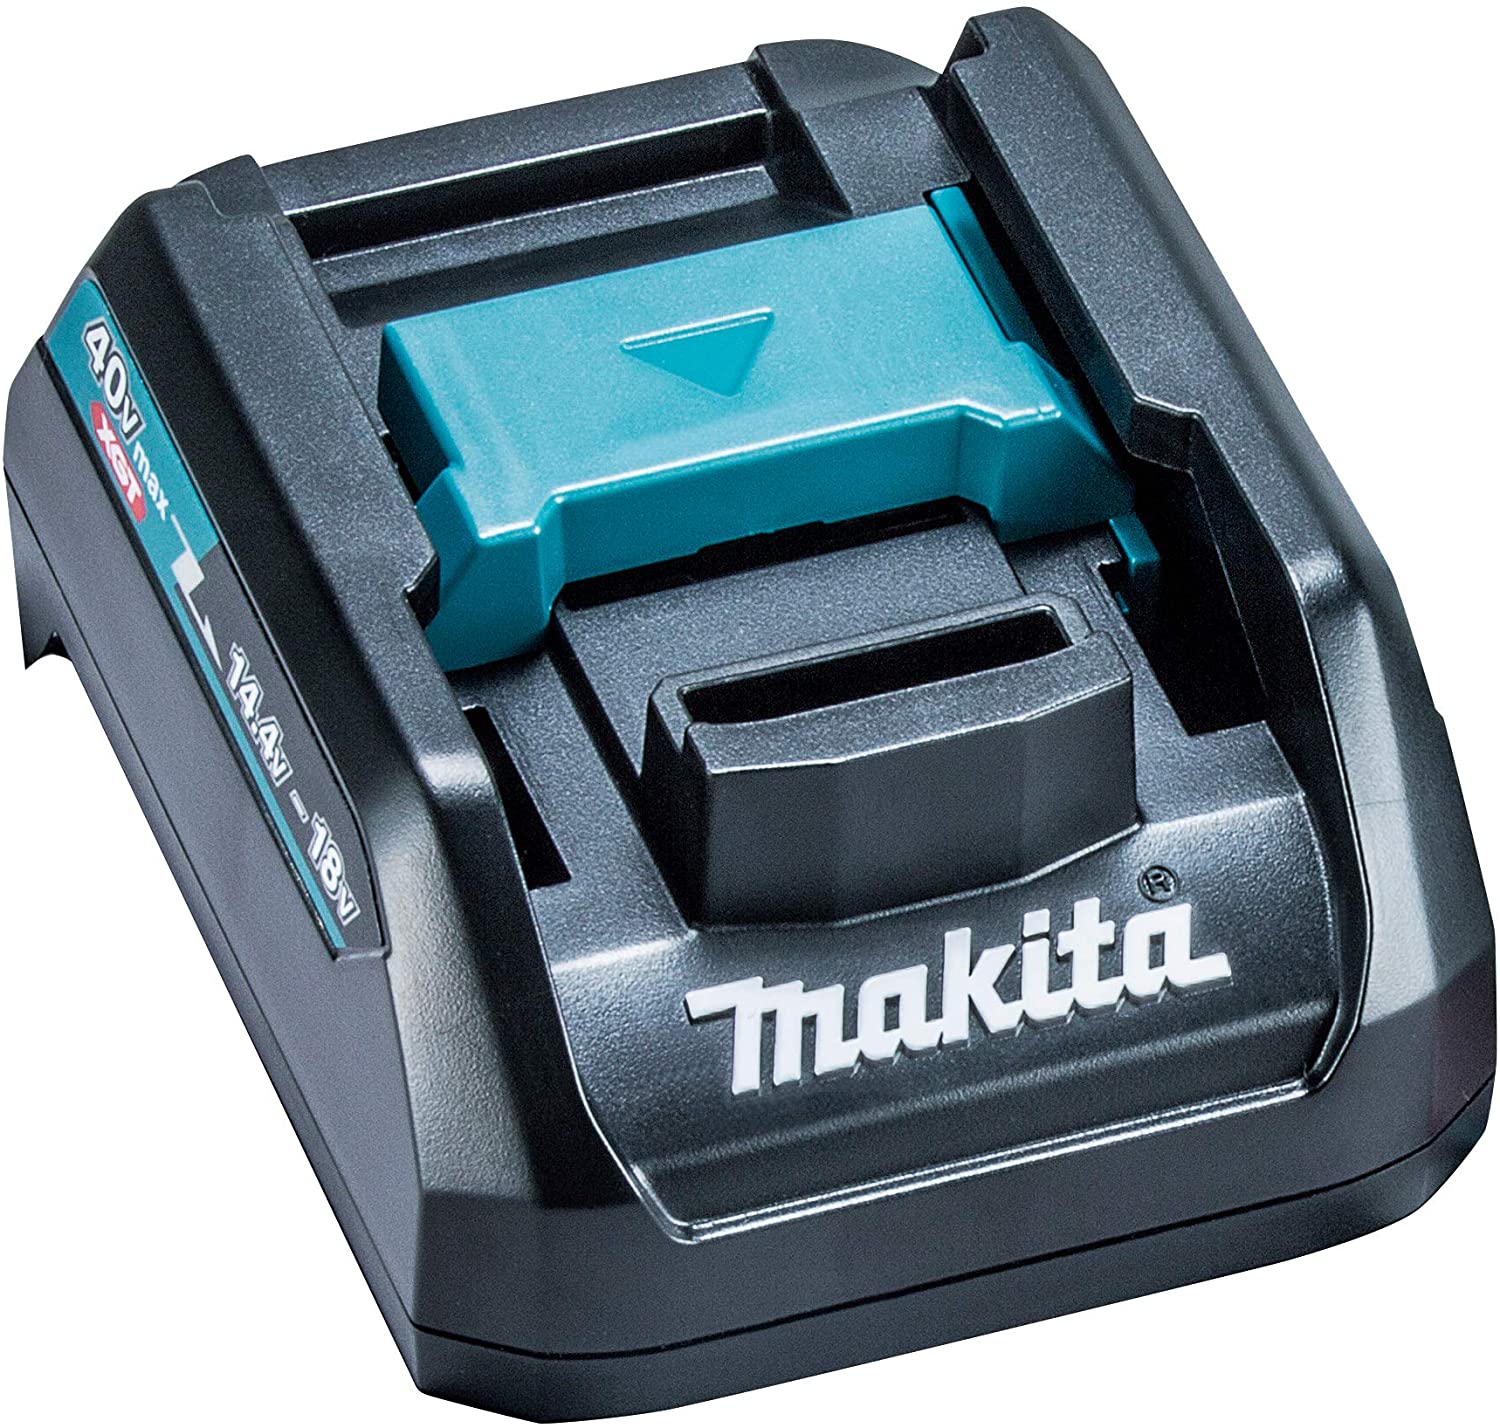 海外 マキタ makita 40V 4.0Ah バッテリー BL4040 A-69939 防塵防滴性能:IP56